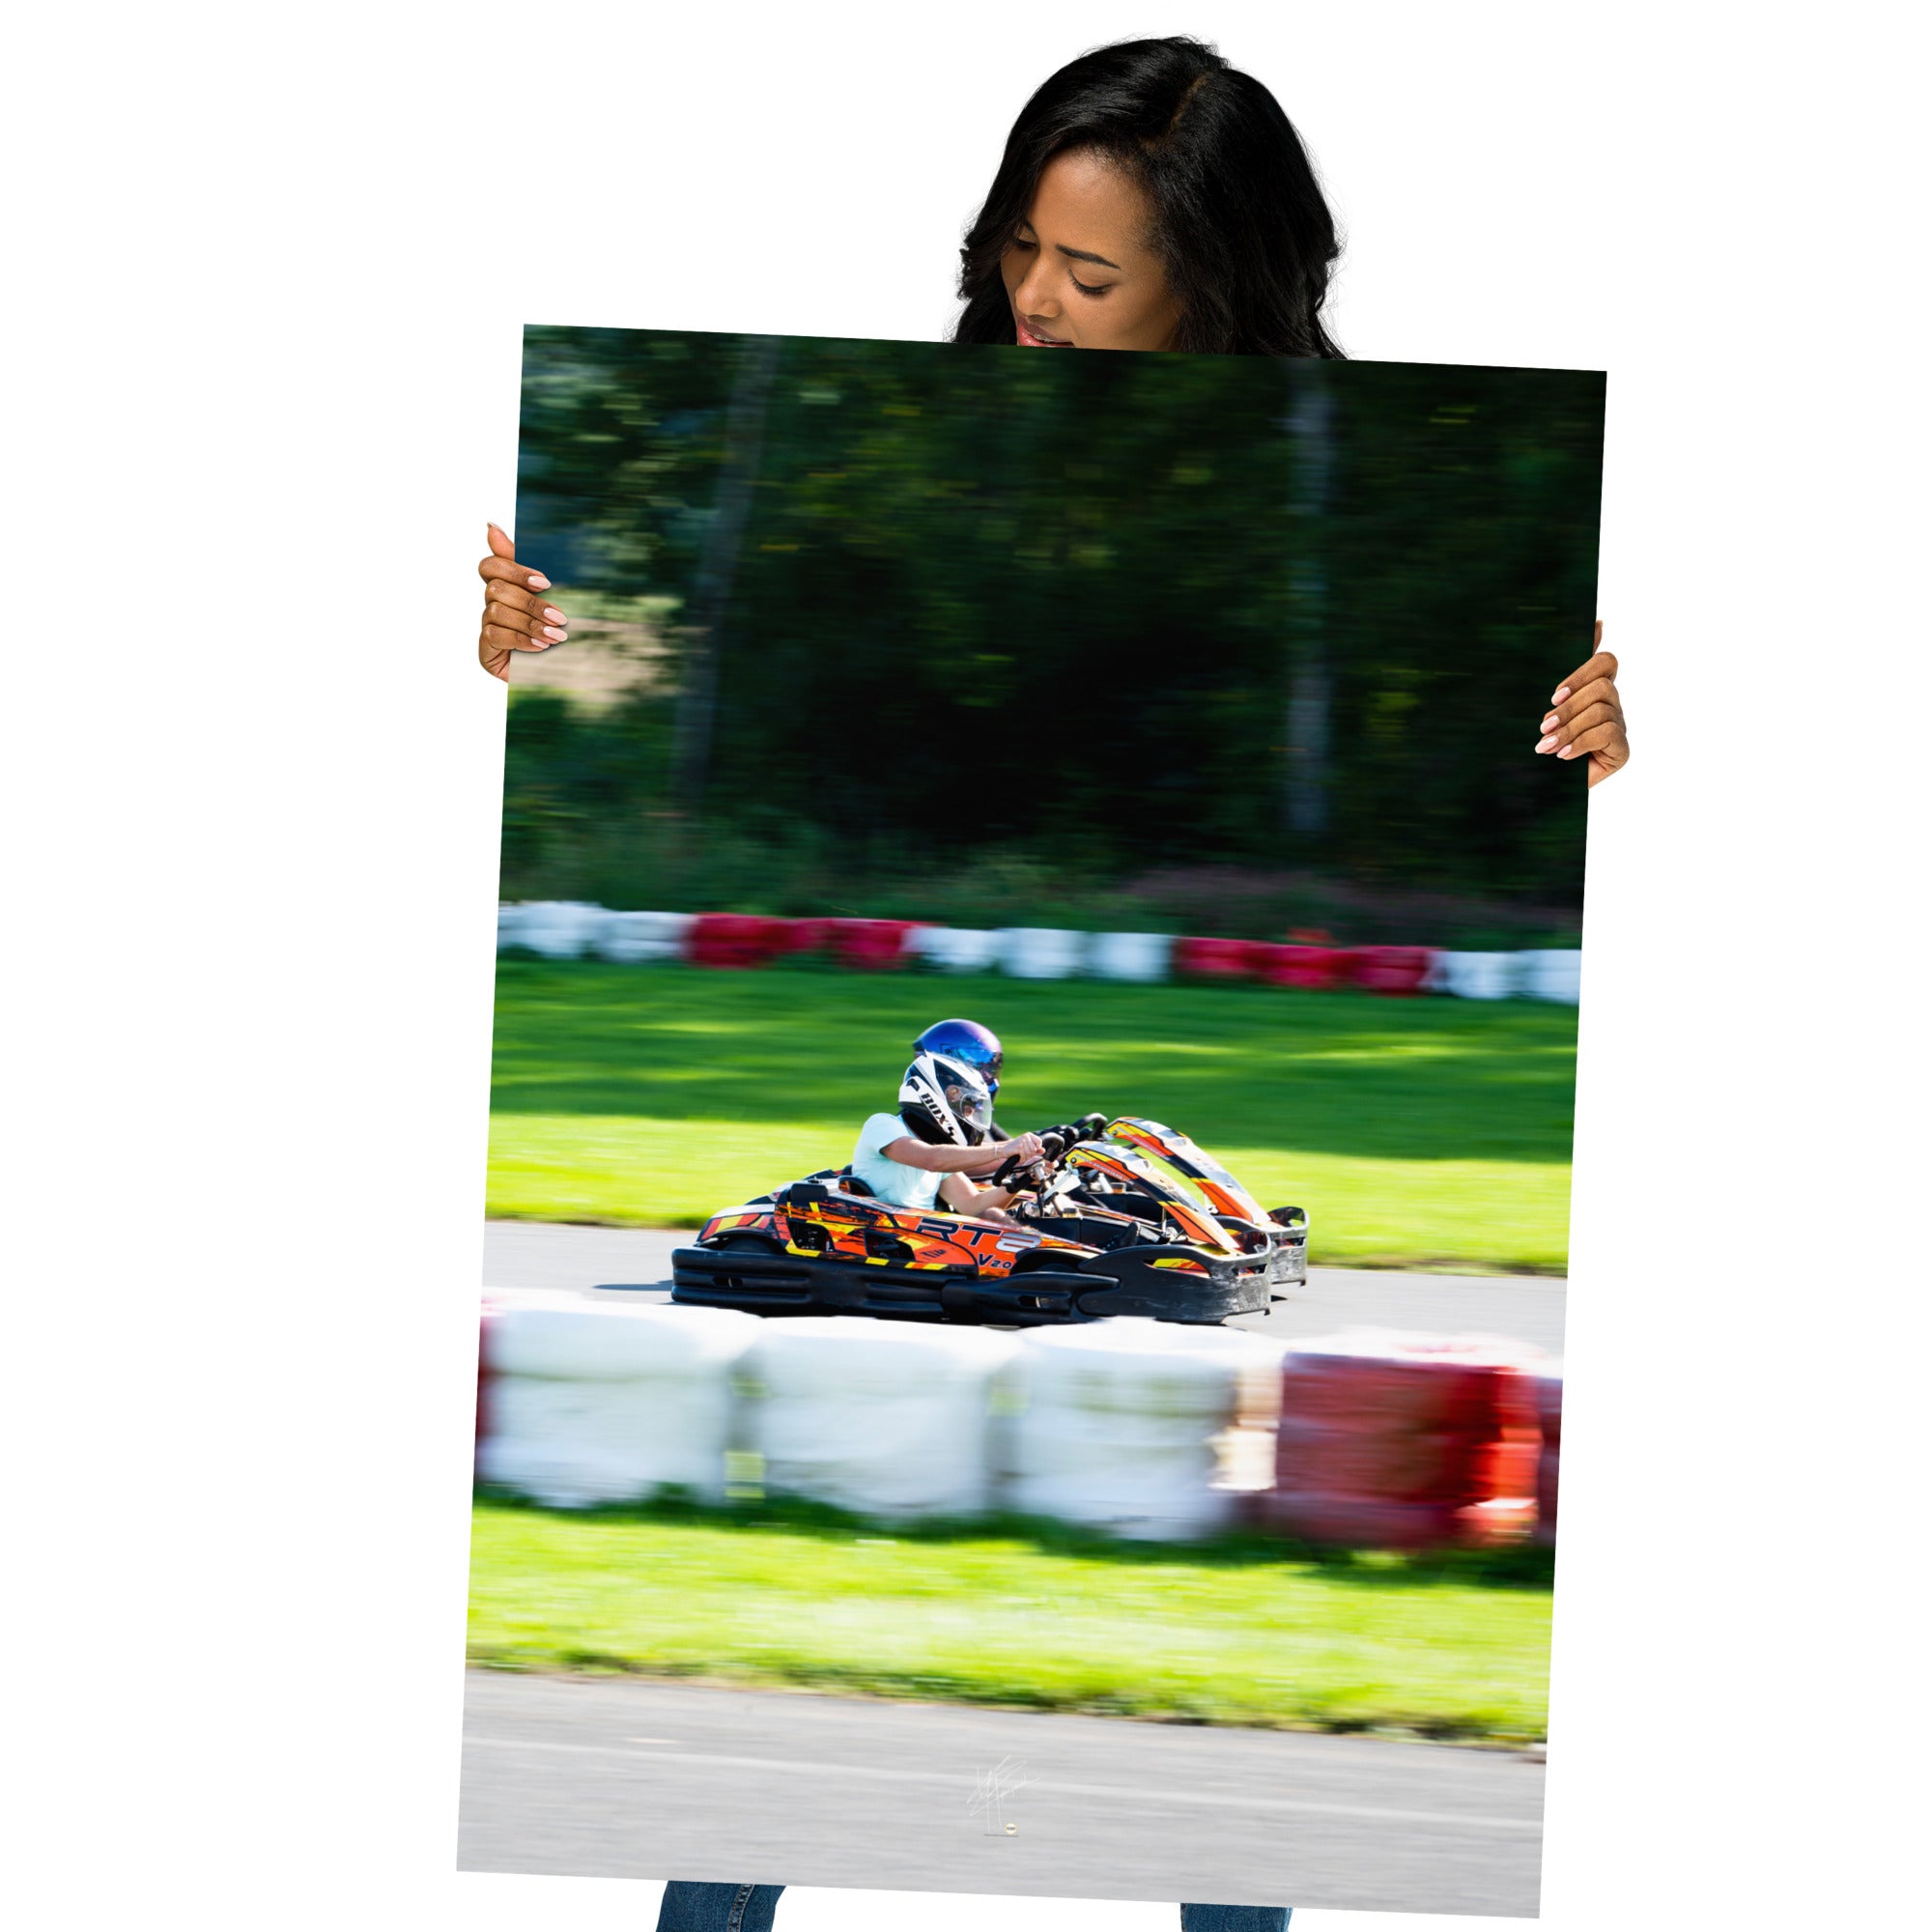 Photographie captivante '1 vs 1' montrant deux pilotes de karting en duel intense, imprimée sur un papier de haute qualité.